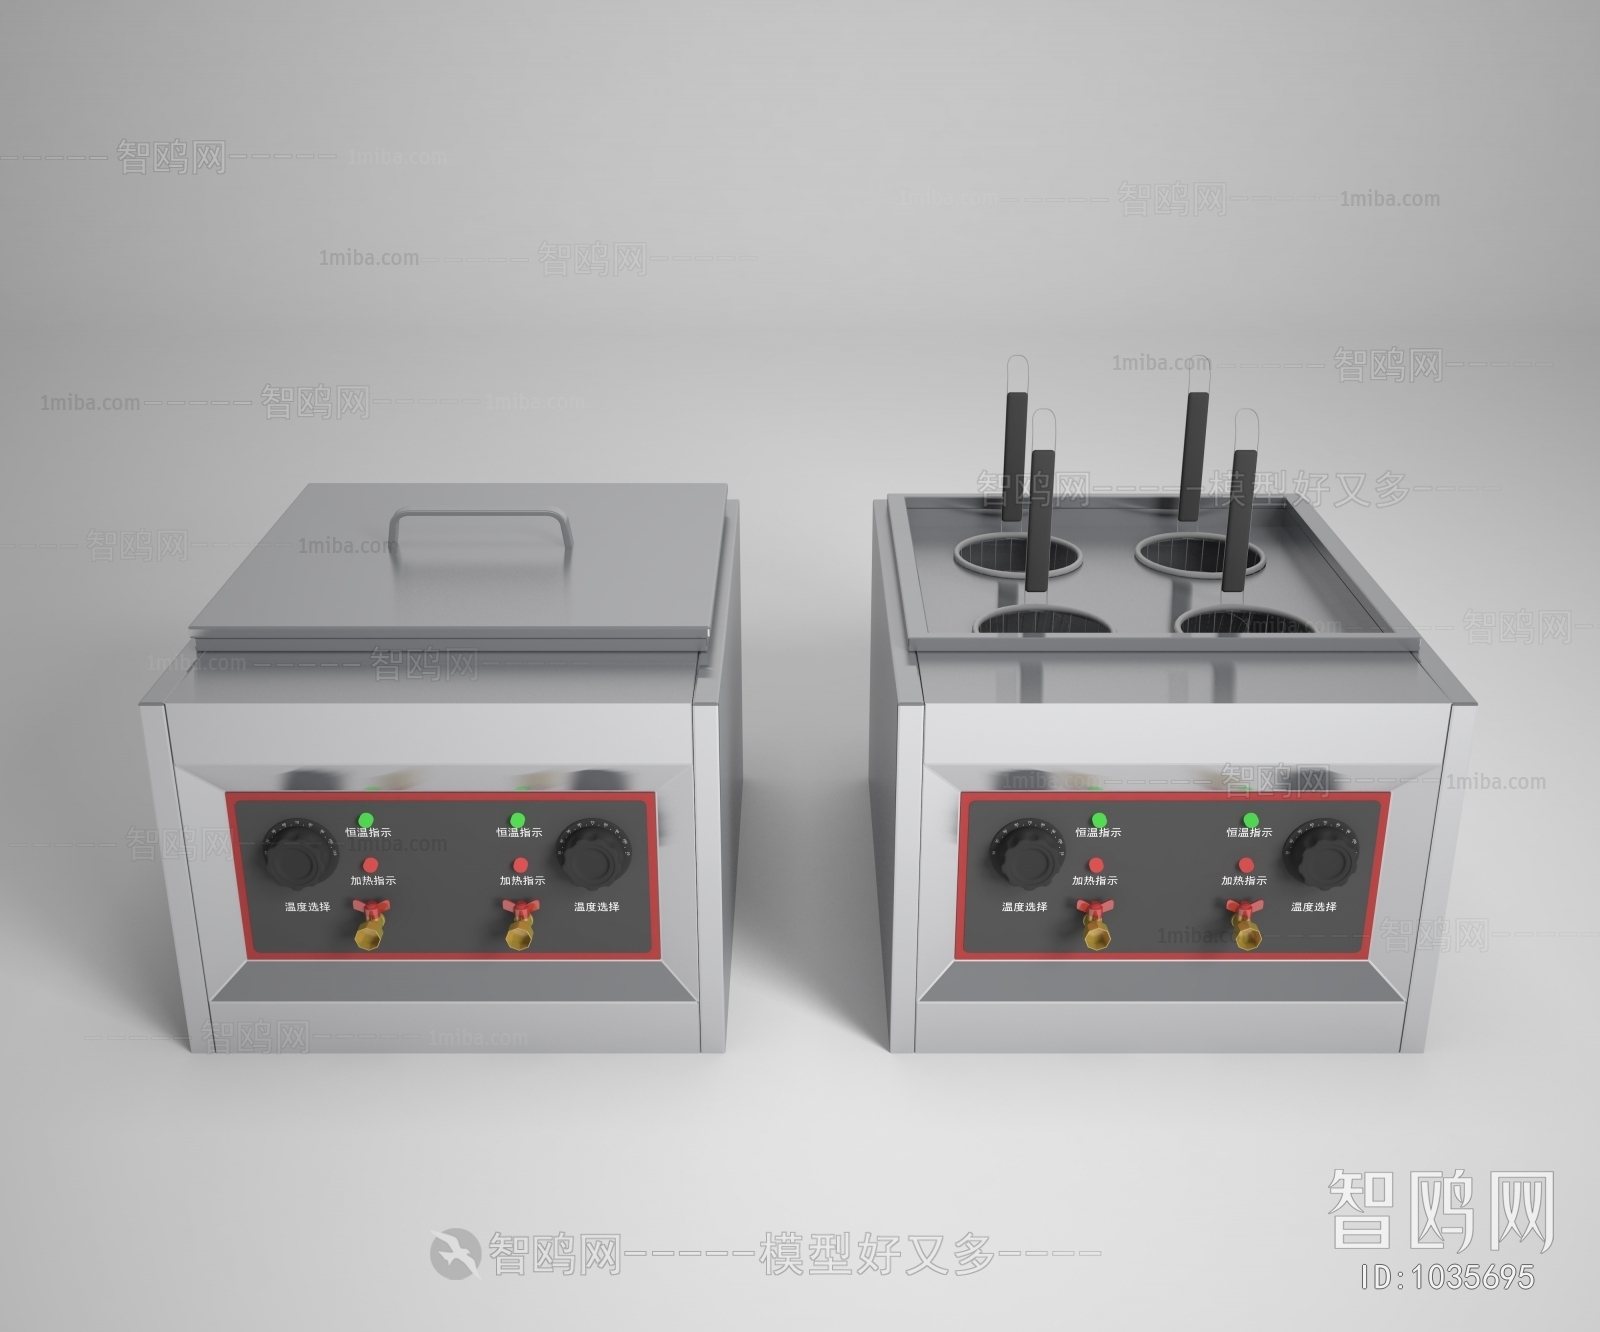 Modern Kitchen Electric Gas Range